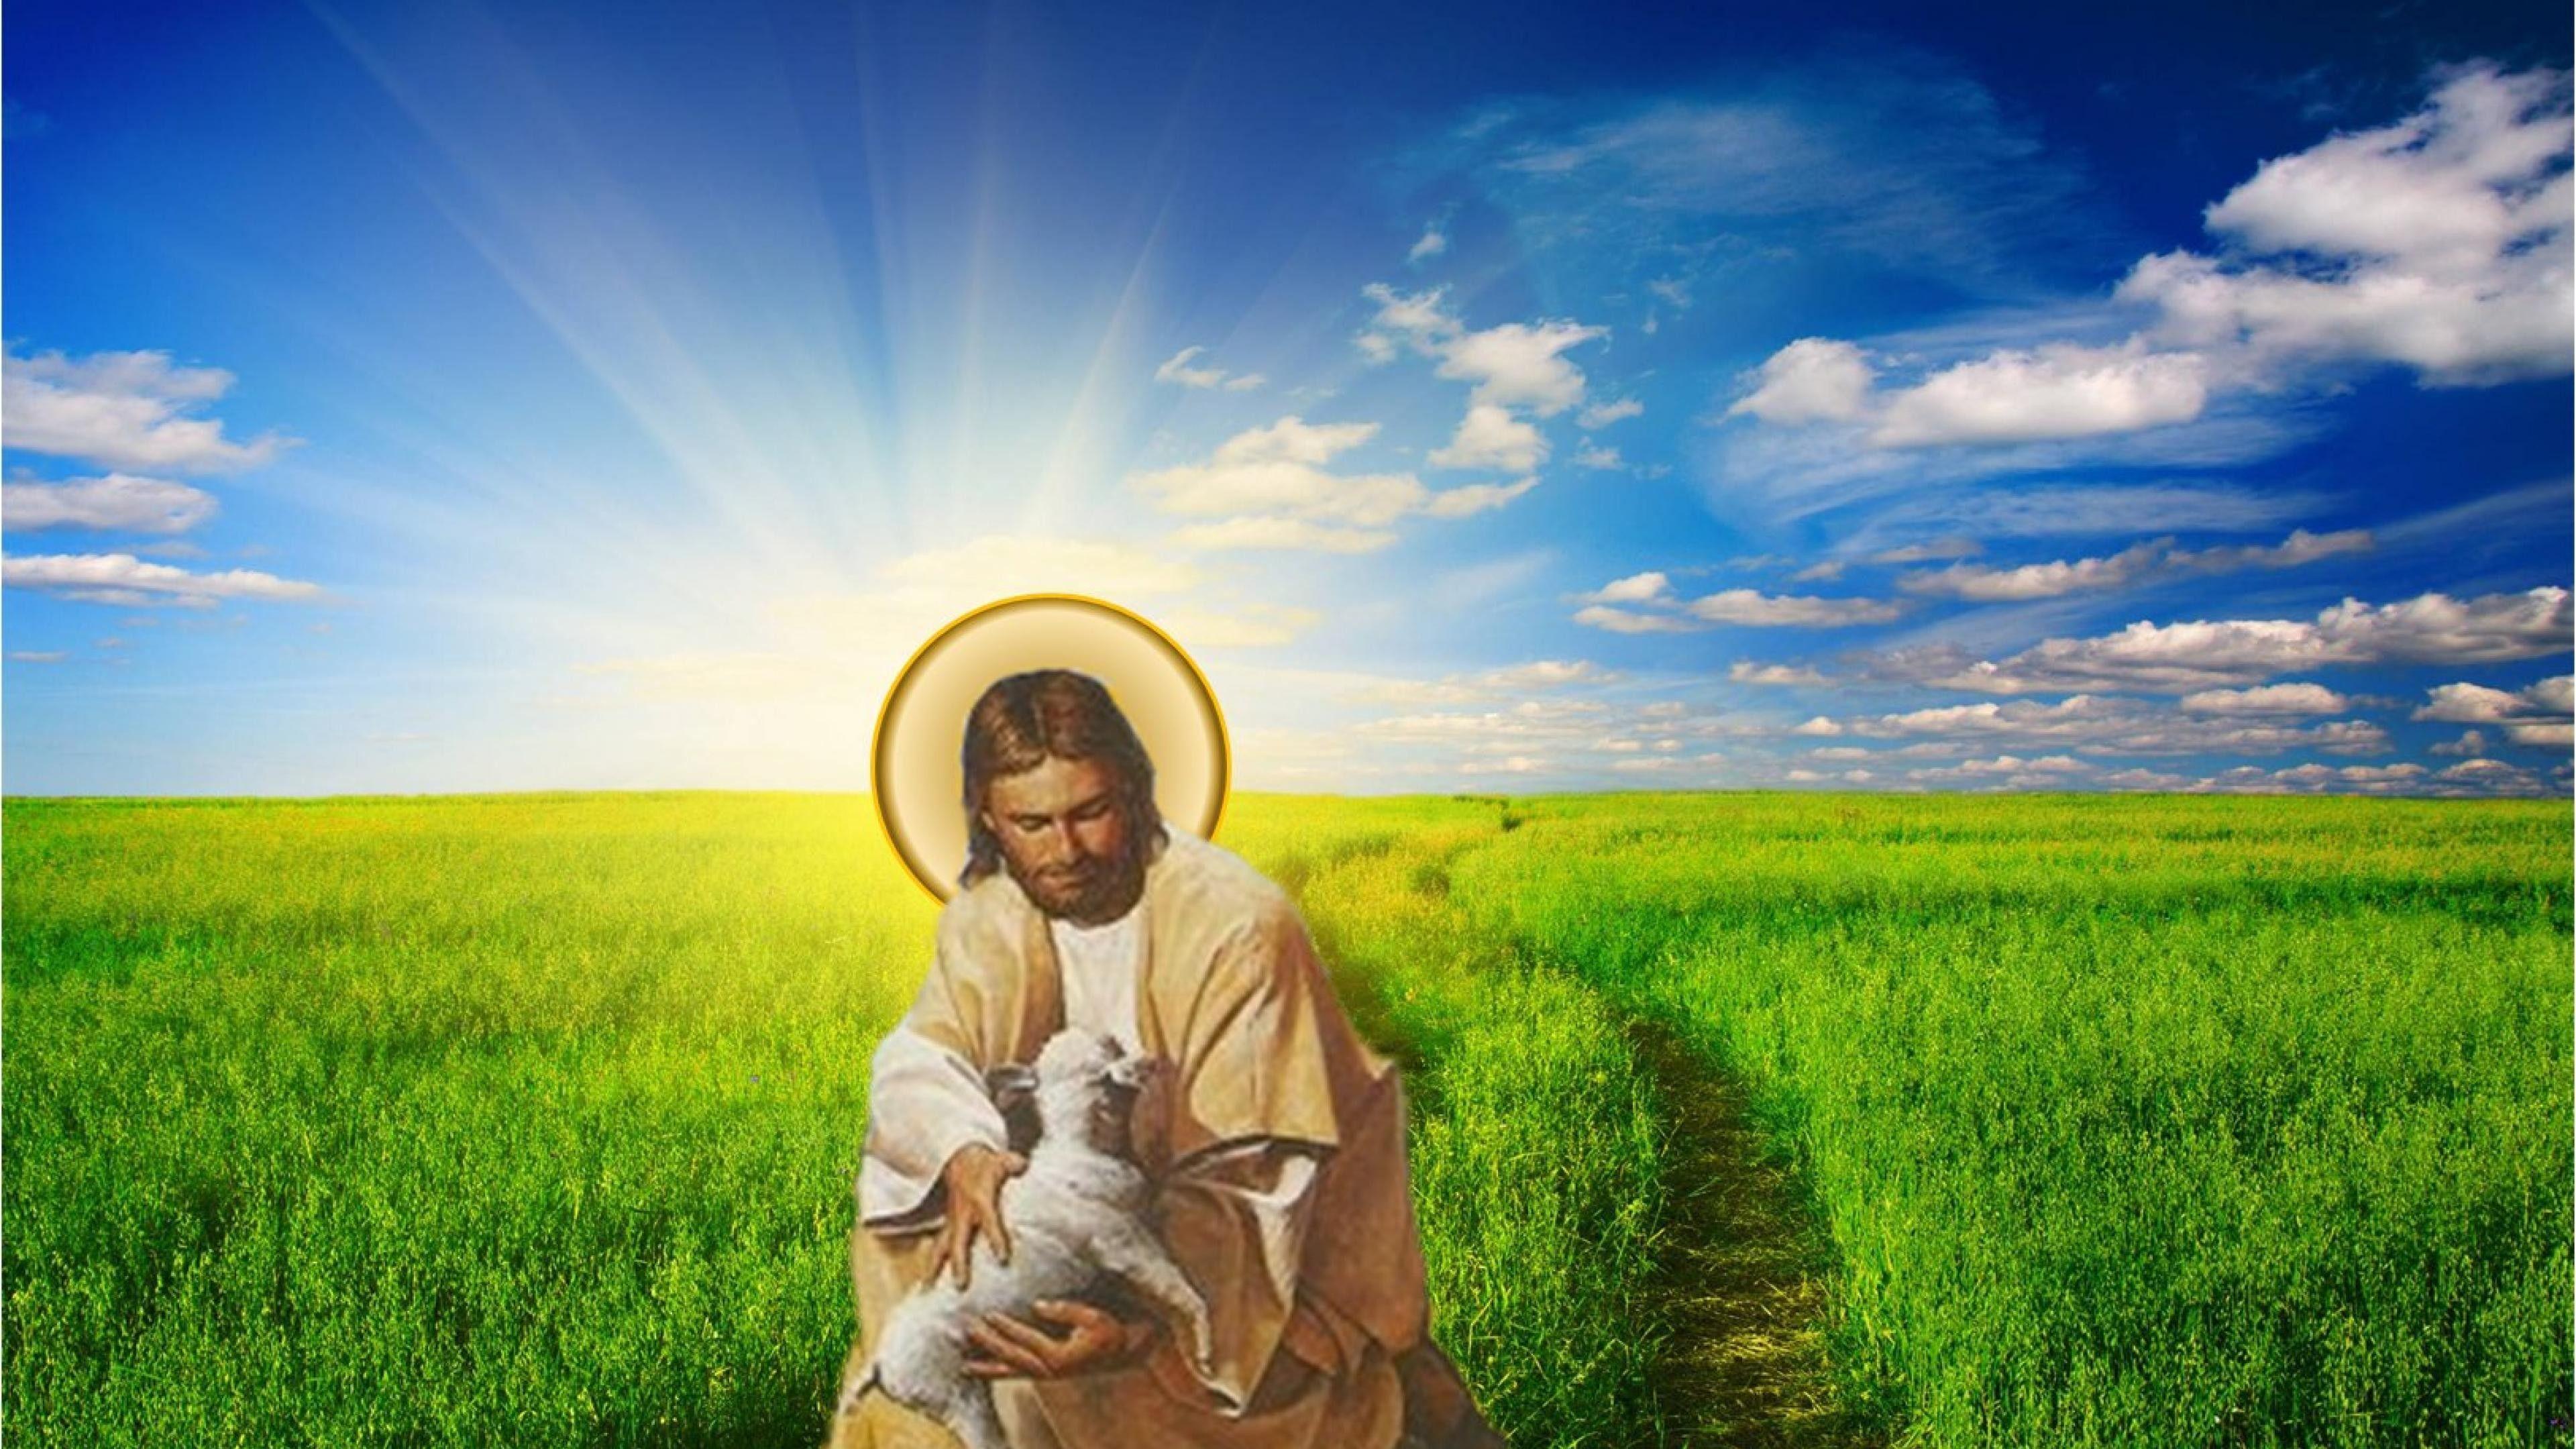 Shepherd Christ Jesus God Wallpaper 2017. Free 4K Wallpaper